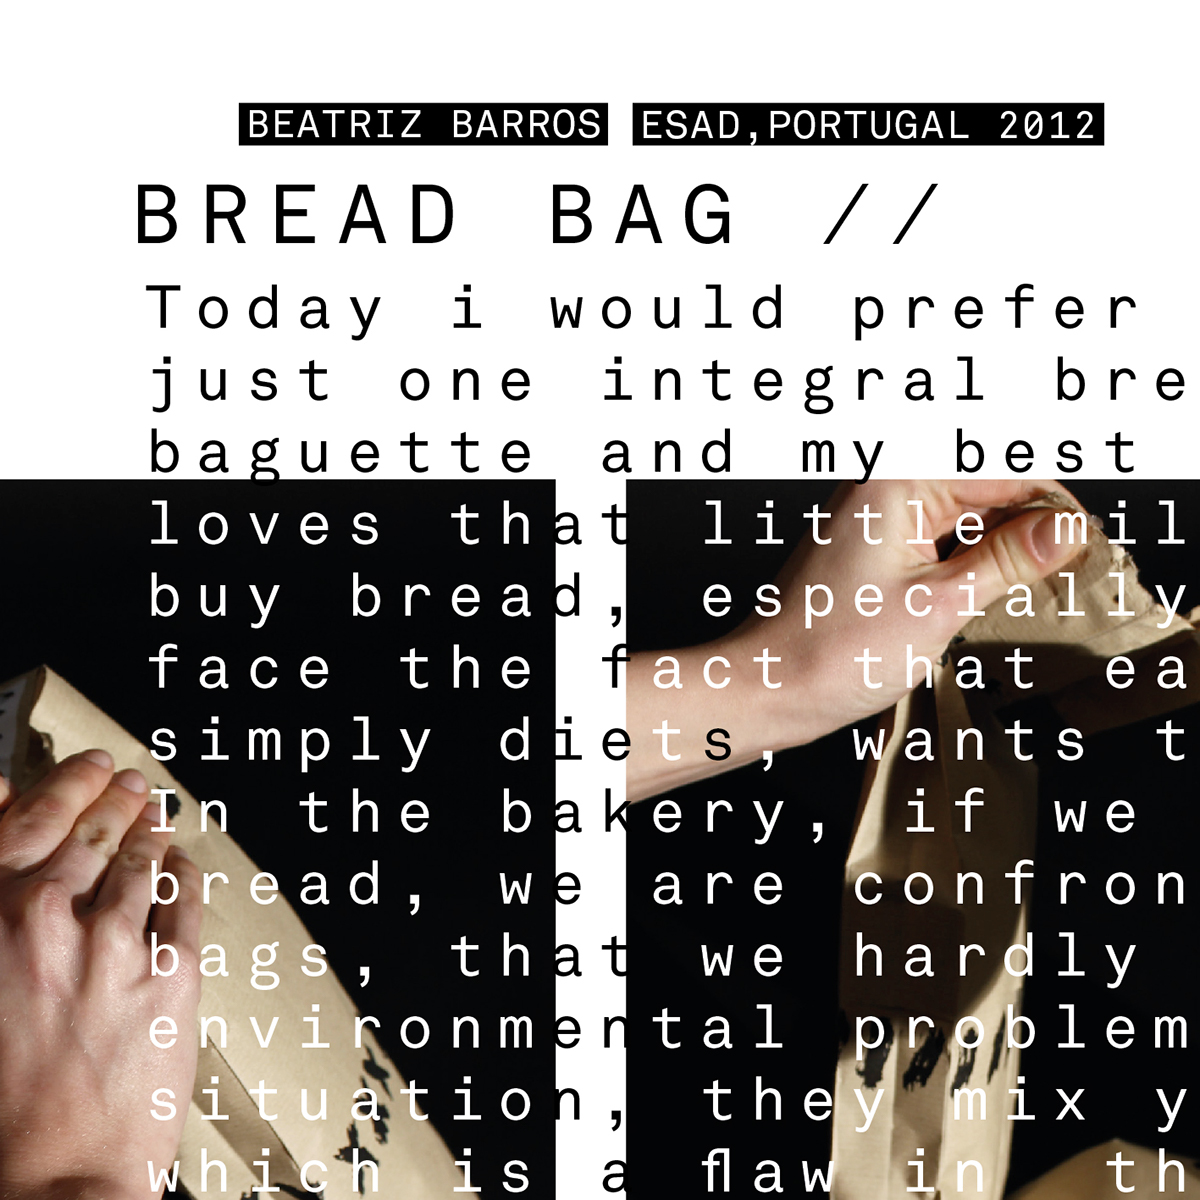 bread  bag  Portugal  Packaging